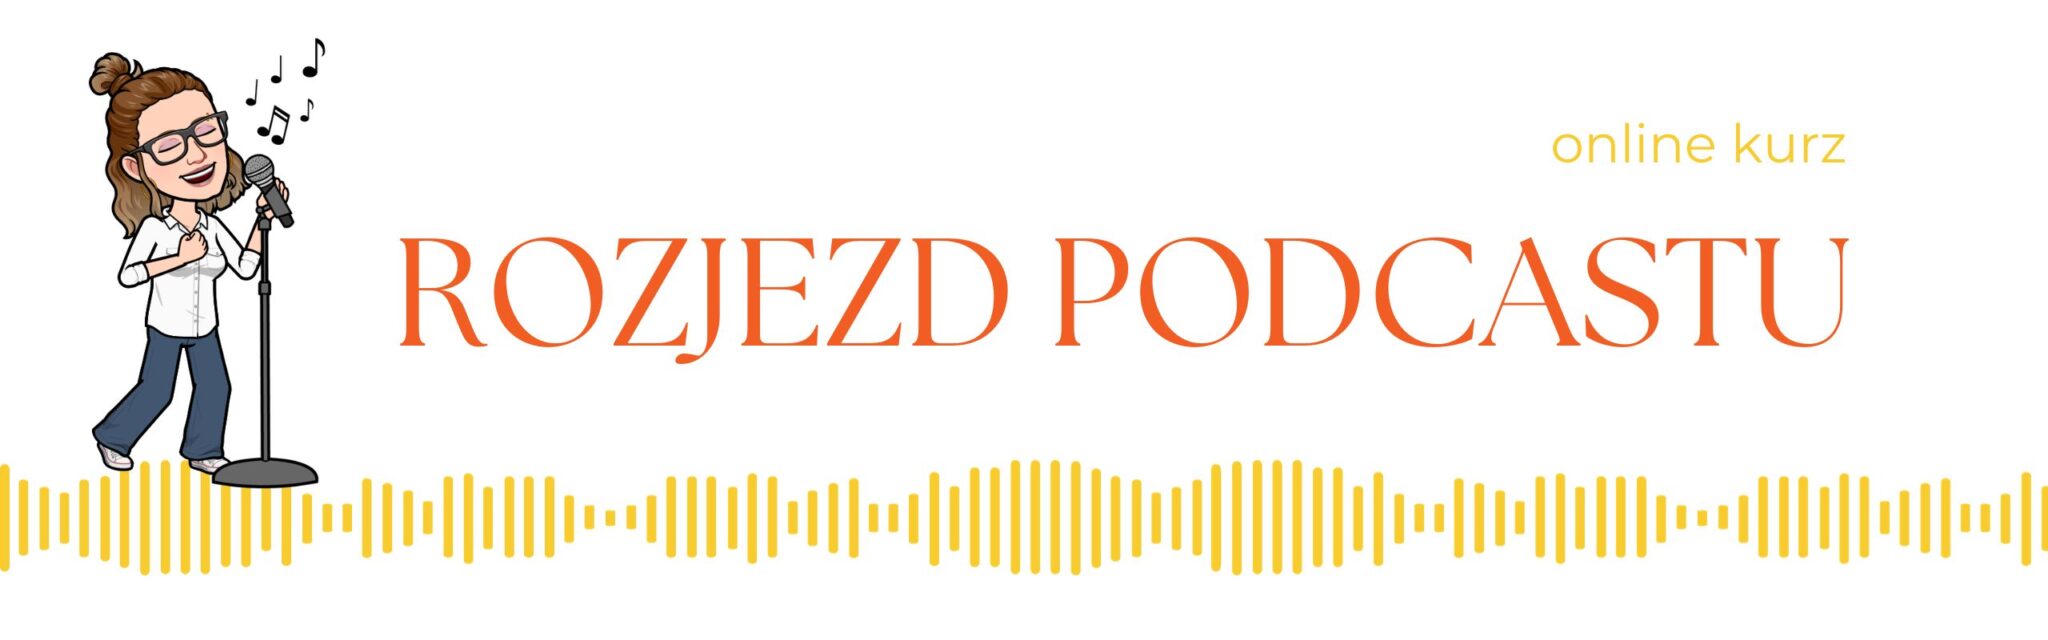 JitkaP rozjezd podcastu online kurz